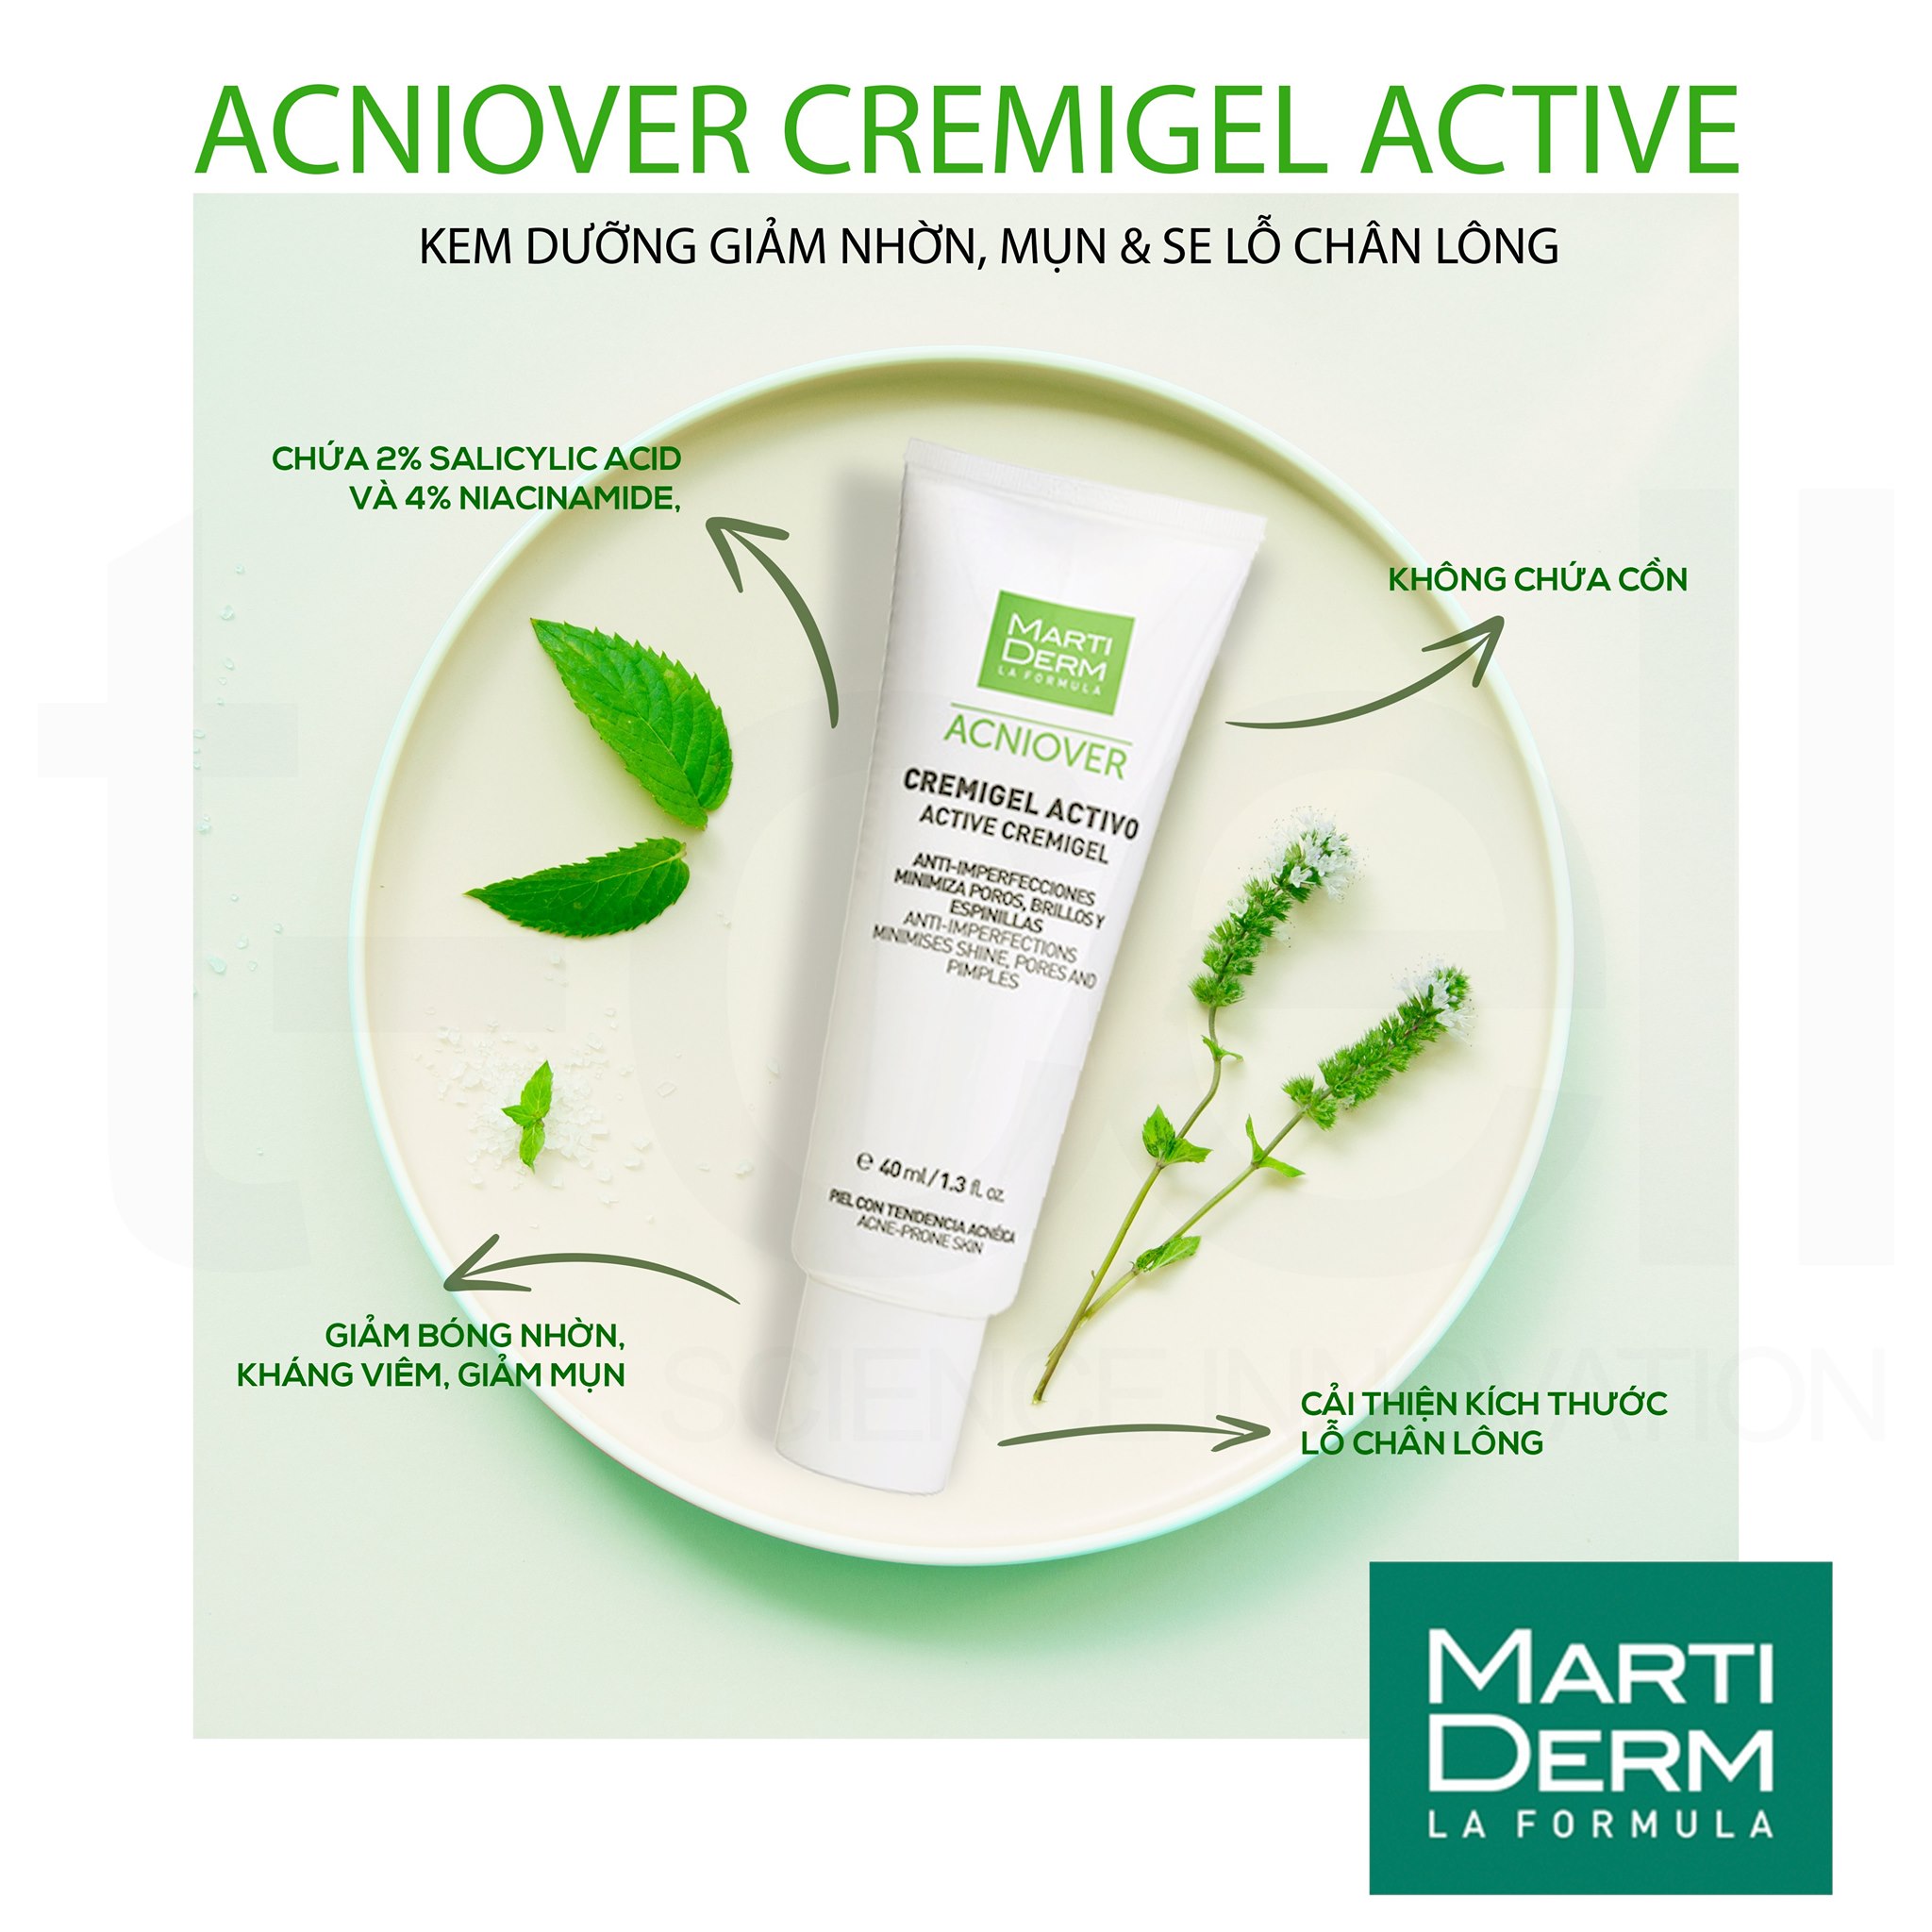 Kem dưỡng giảm nhờn, mụn & se lỗ chân lông Martiderm Acniover Active  Cremigel - 40ml | Skin20